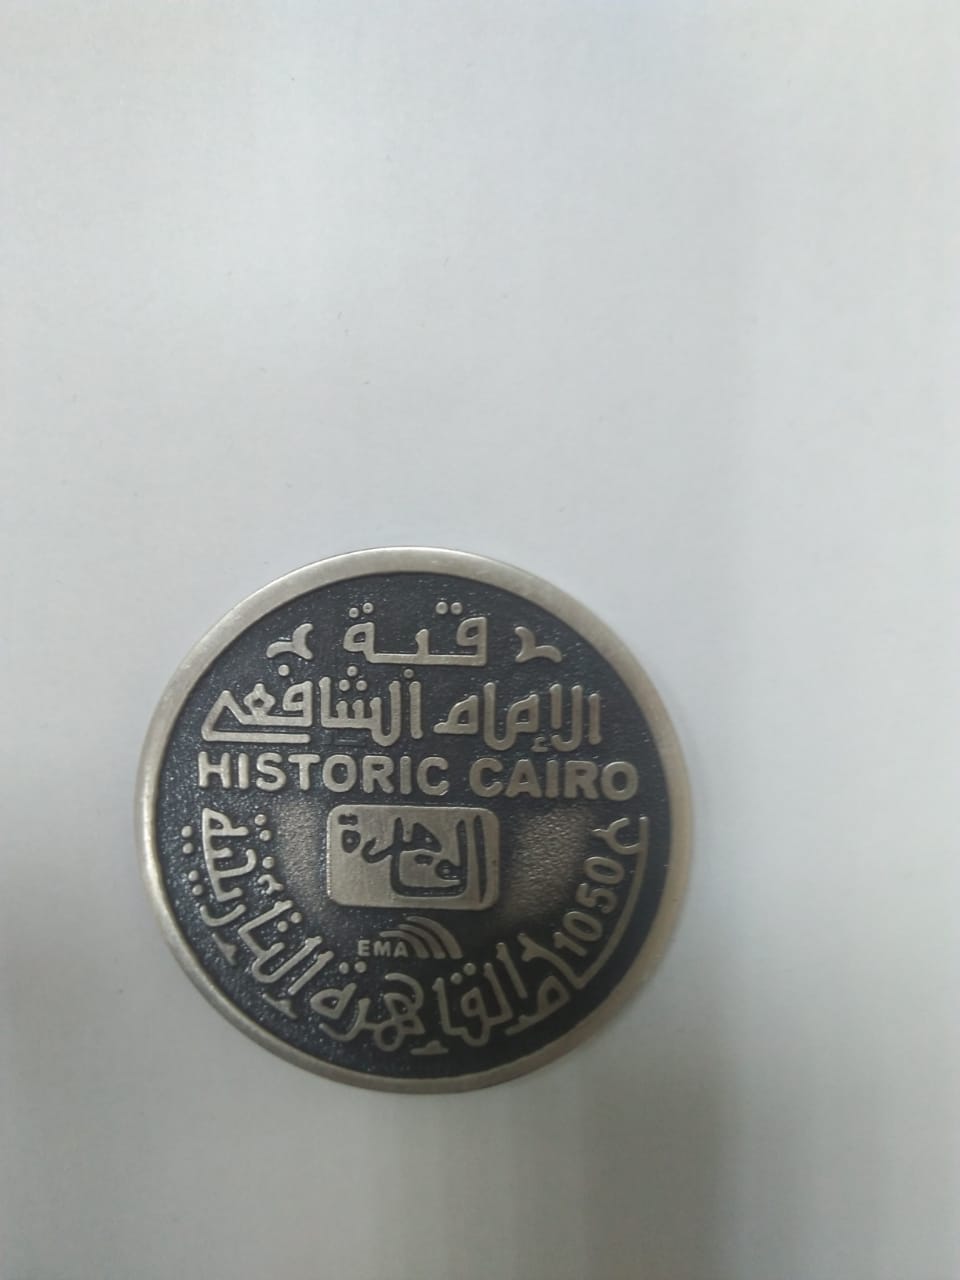   إصدار ميداليات التذكارية بمناسبة مرور 1050 عام علي إنشاء القاهرة التاريخية